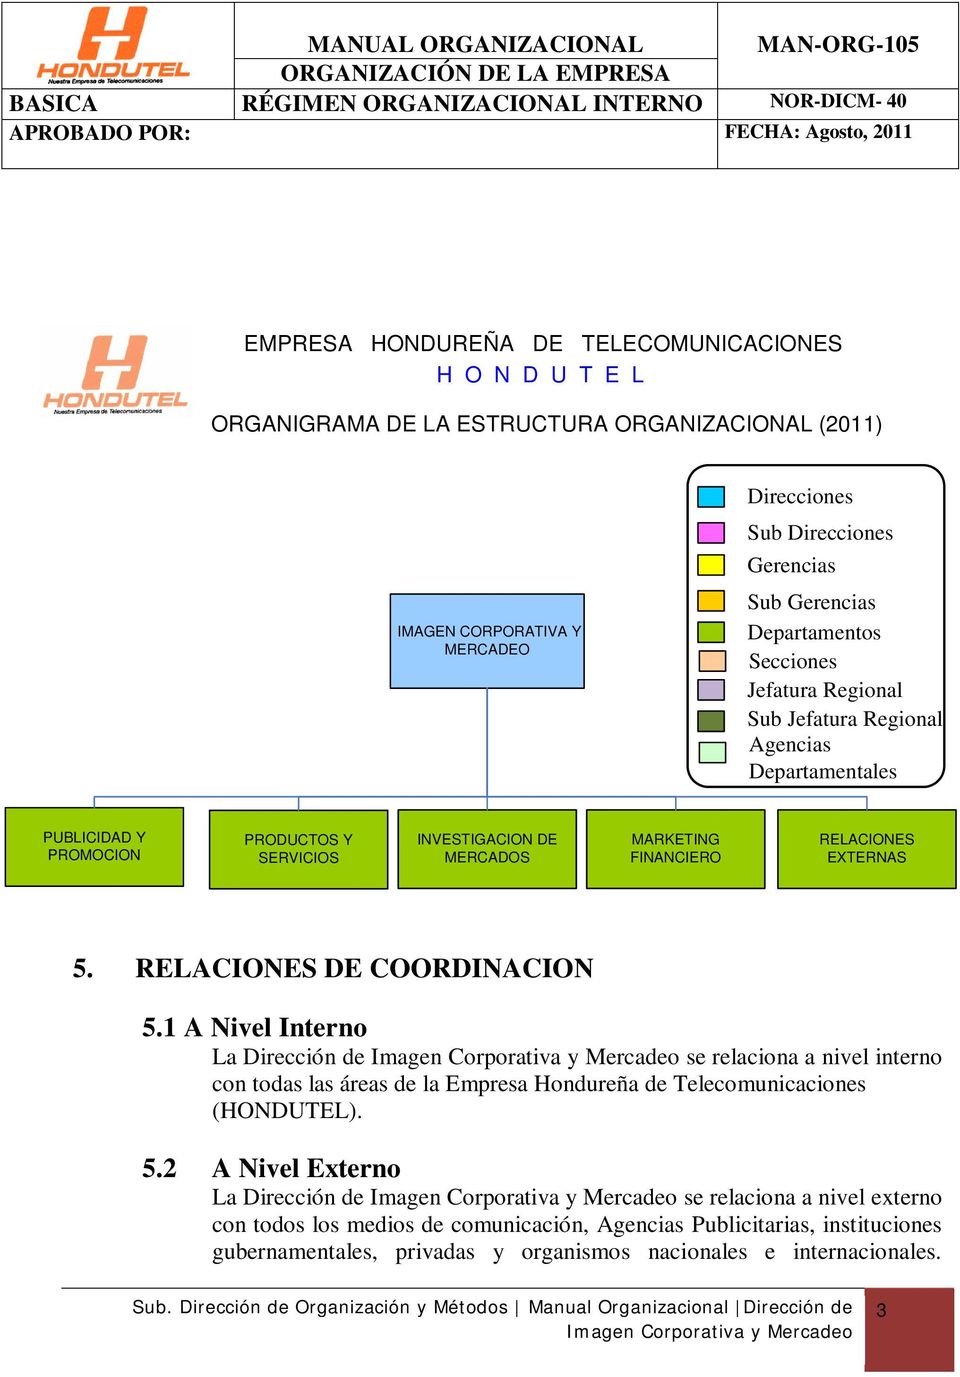 MERCADOS MARKETING FINANCIERO RELACIONES EXTERNAS 5. RELACIONES DE COORDINACION 5.